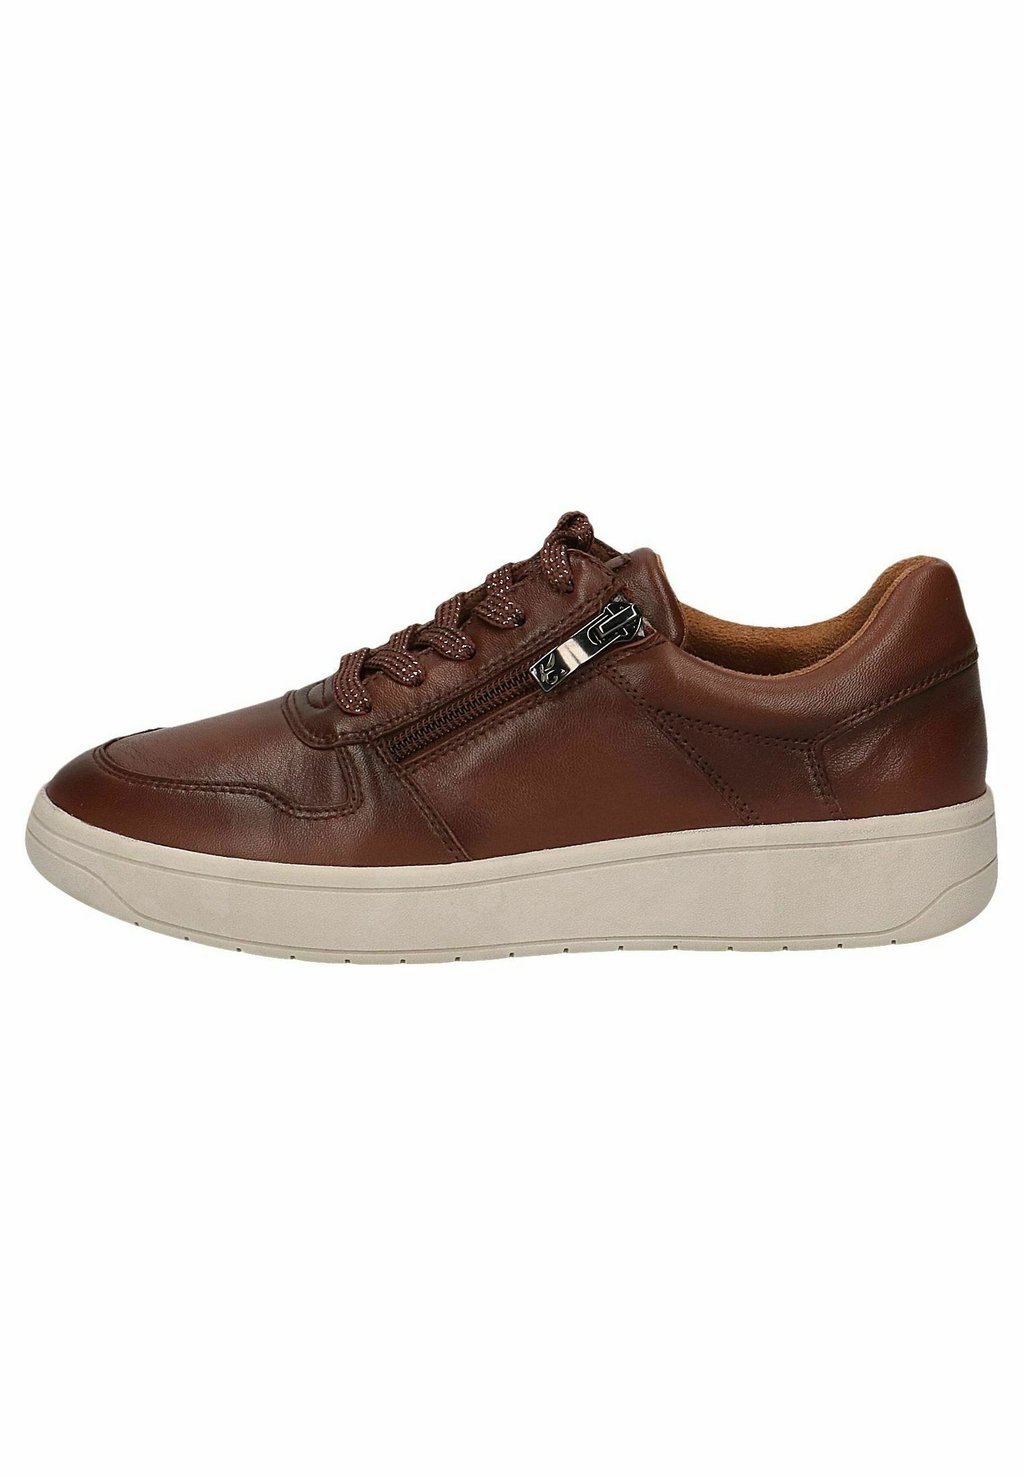 Кроссовки на шнуровке Caprice, коричневый ботинки на шнуровке caprice